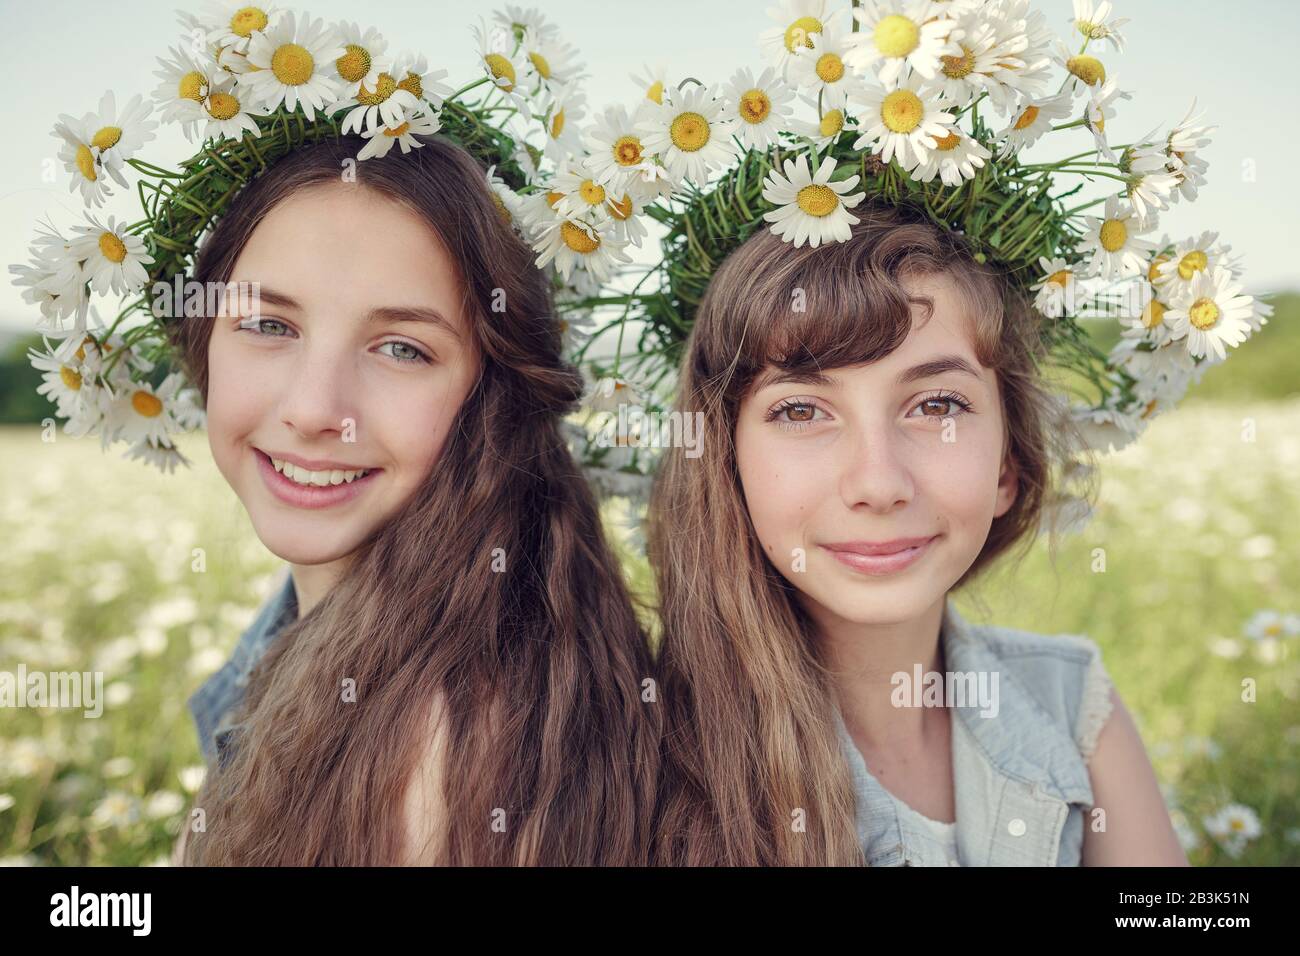 Petite fille dans un champ de fleurs de Marguerite. Les filles dans une couronne de daisies blanches, le concept et l'idée d'une enfance heureuse Banque D'Images